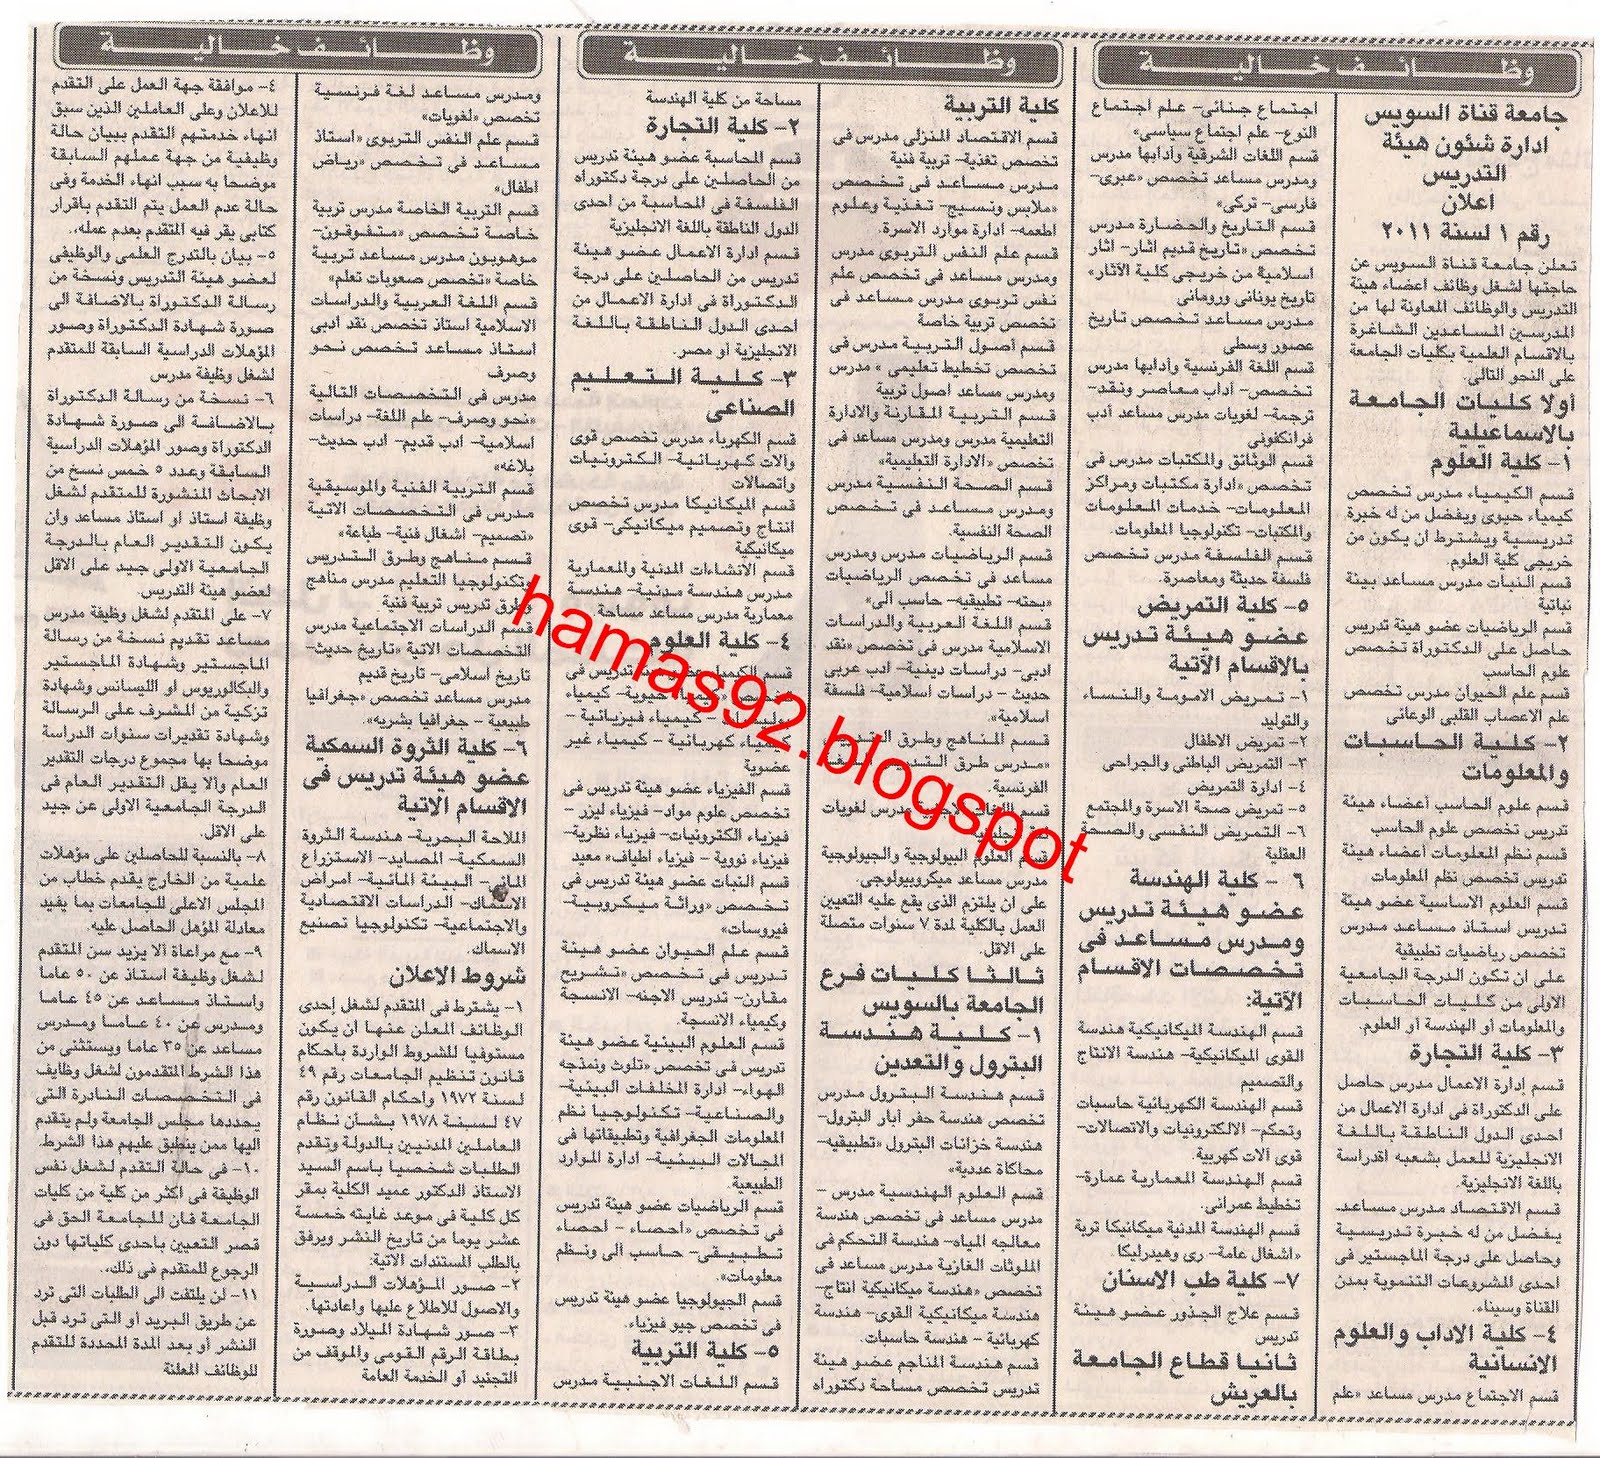 وظائف جامعة قناة السويس - وظائف الصحف المصرية الاثنين 16 مايو 2011 Picture+004